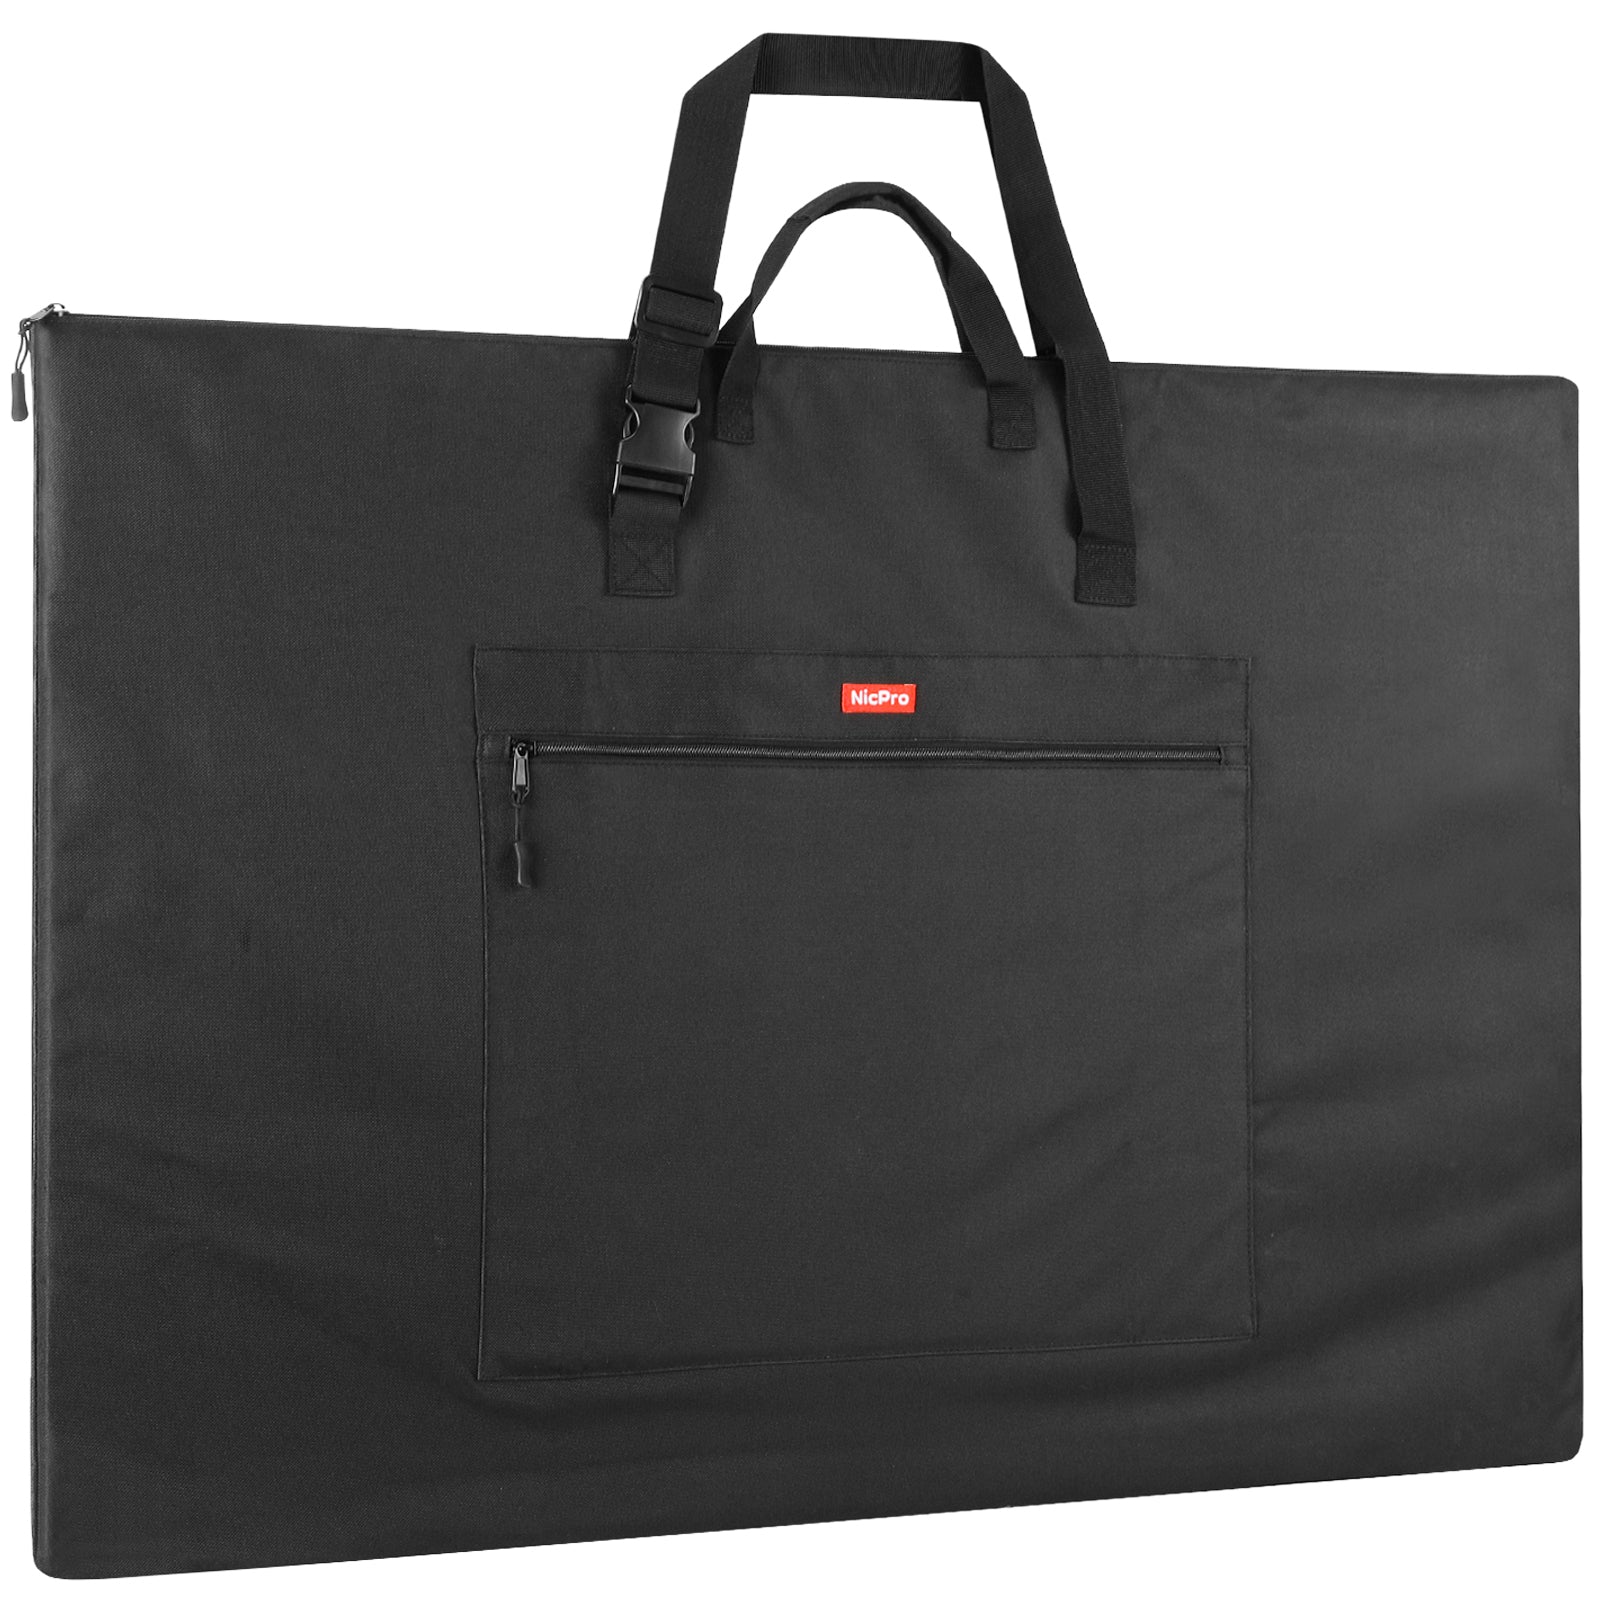 Art Portfolio Case Portfolio Backpack Adjustable Shoulder Strap